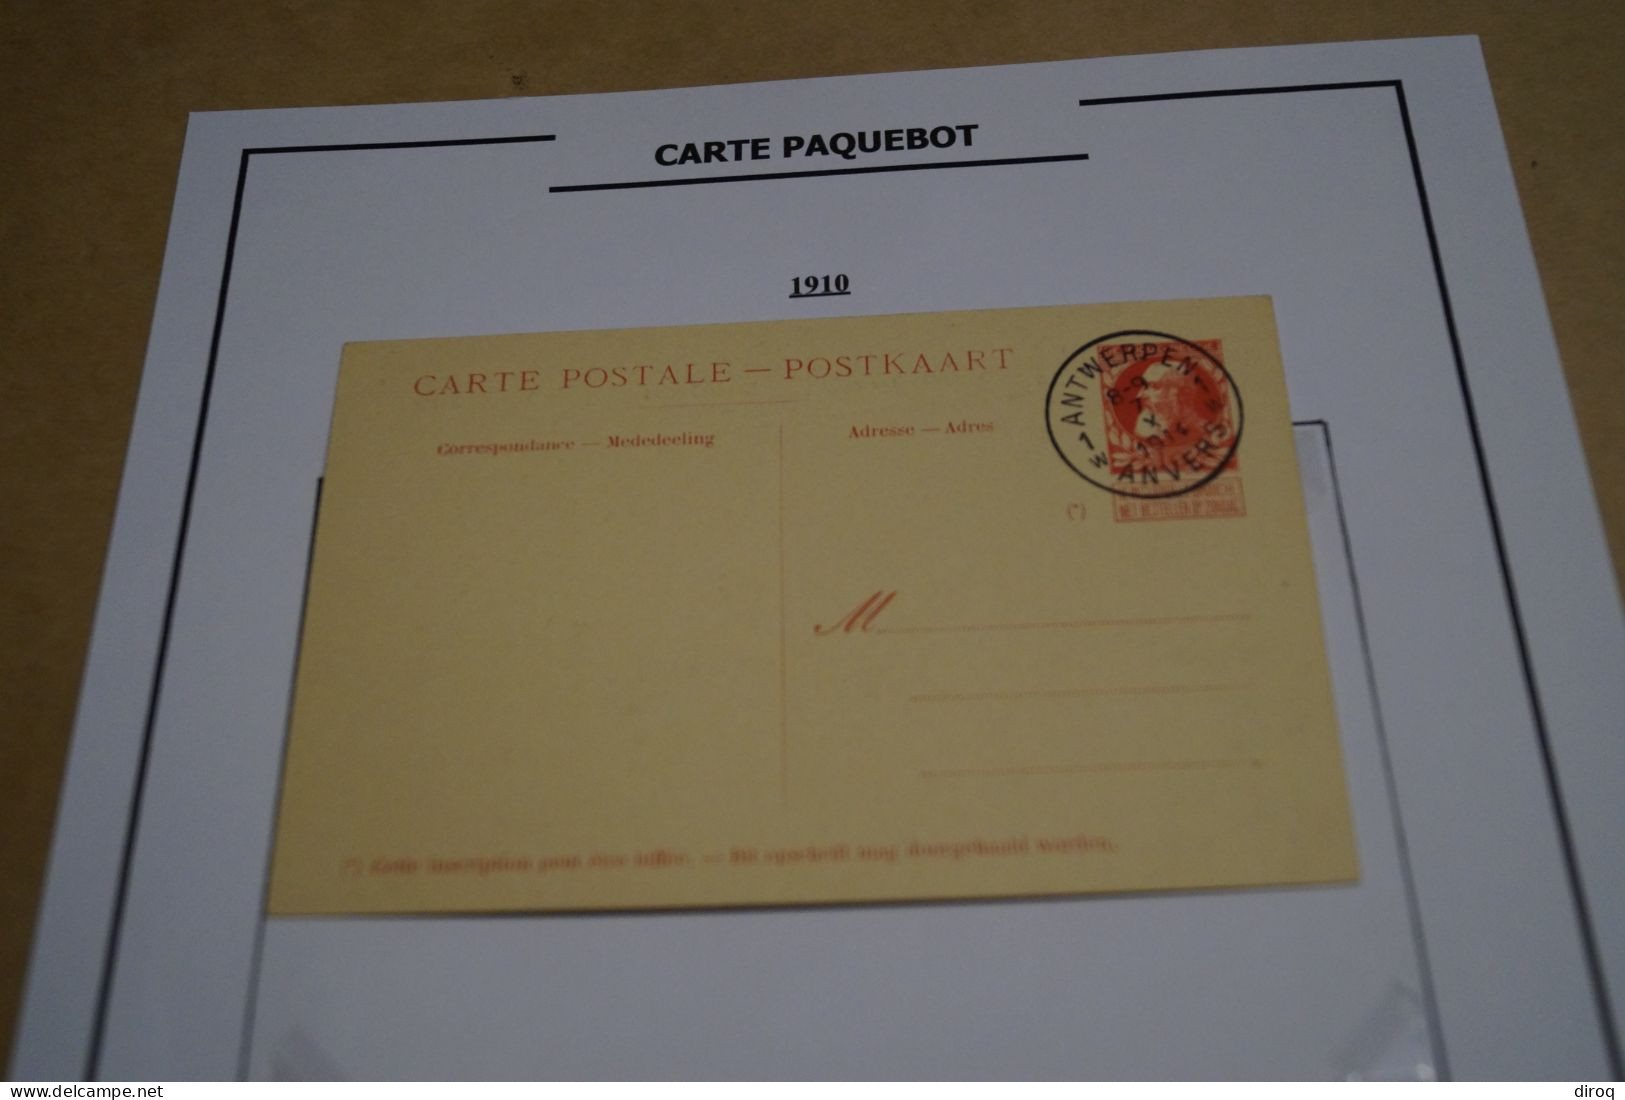 Carte Paquebot 1910, Le Jan Breydel,timbre Oblitéré 10 C. Rouge,grosse Barbe ,état Neuf Pour Collection - Piroscafi